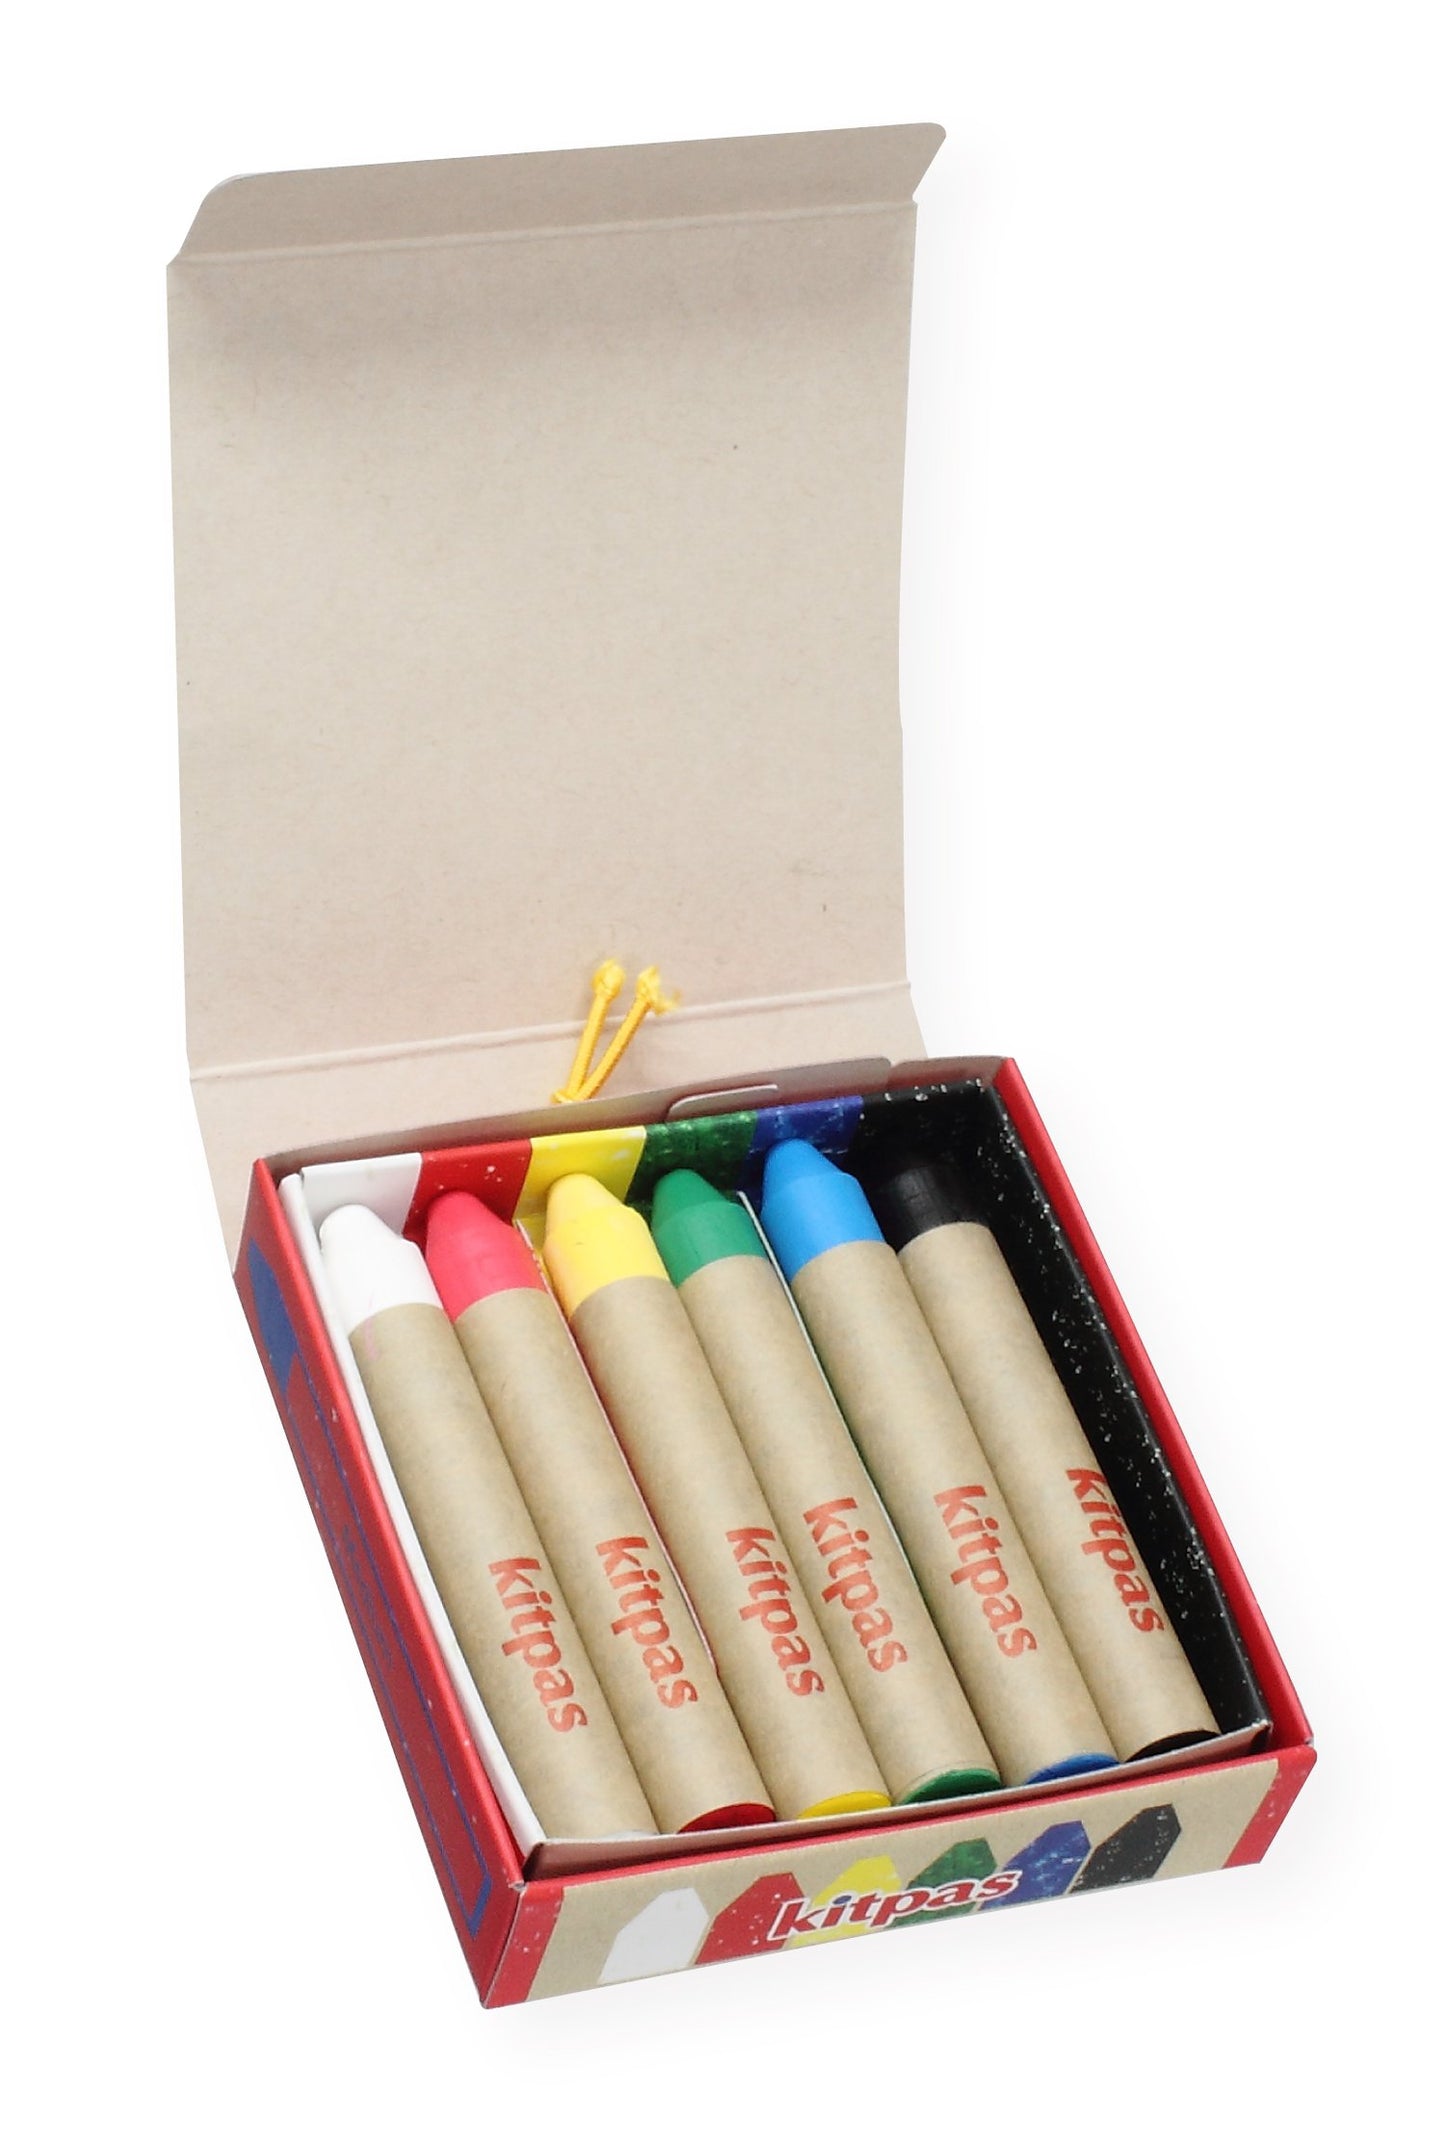 Kitpas Rice Bran Crayons - set of 6